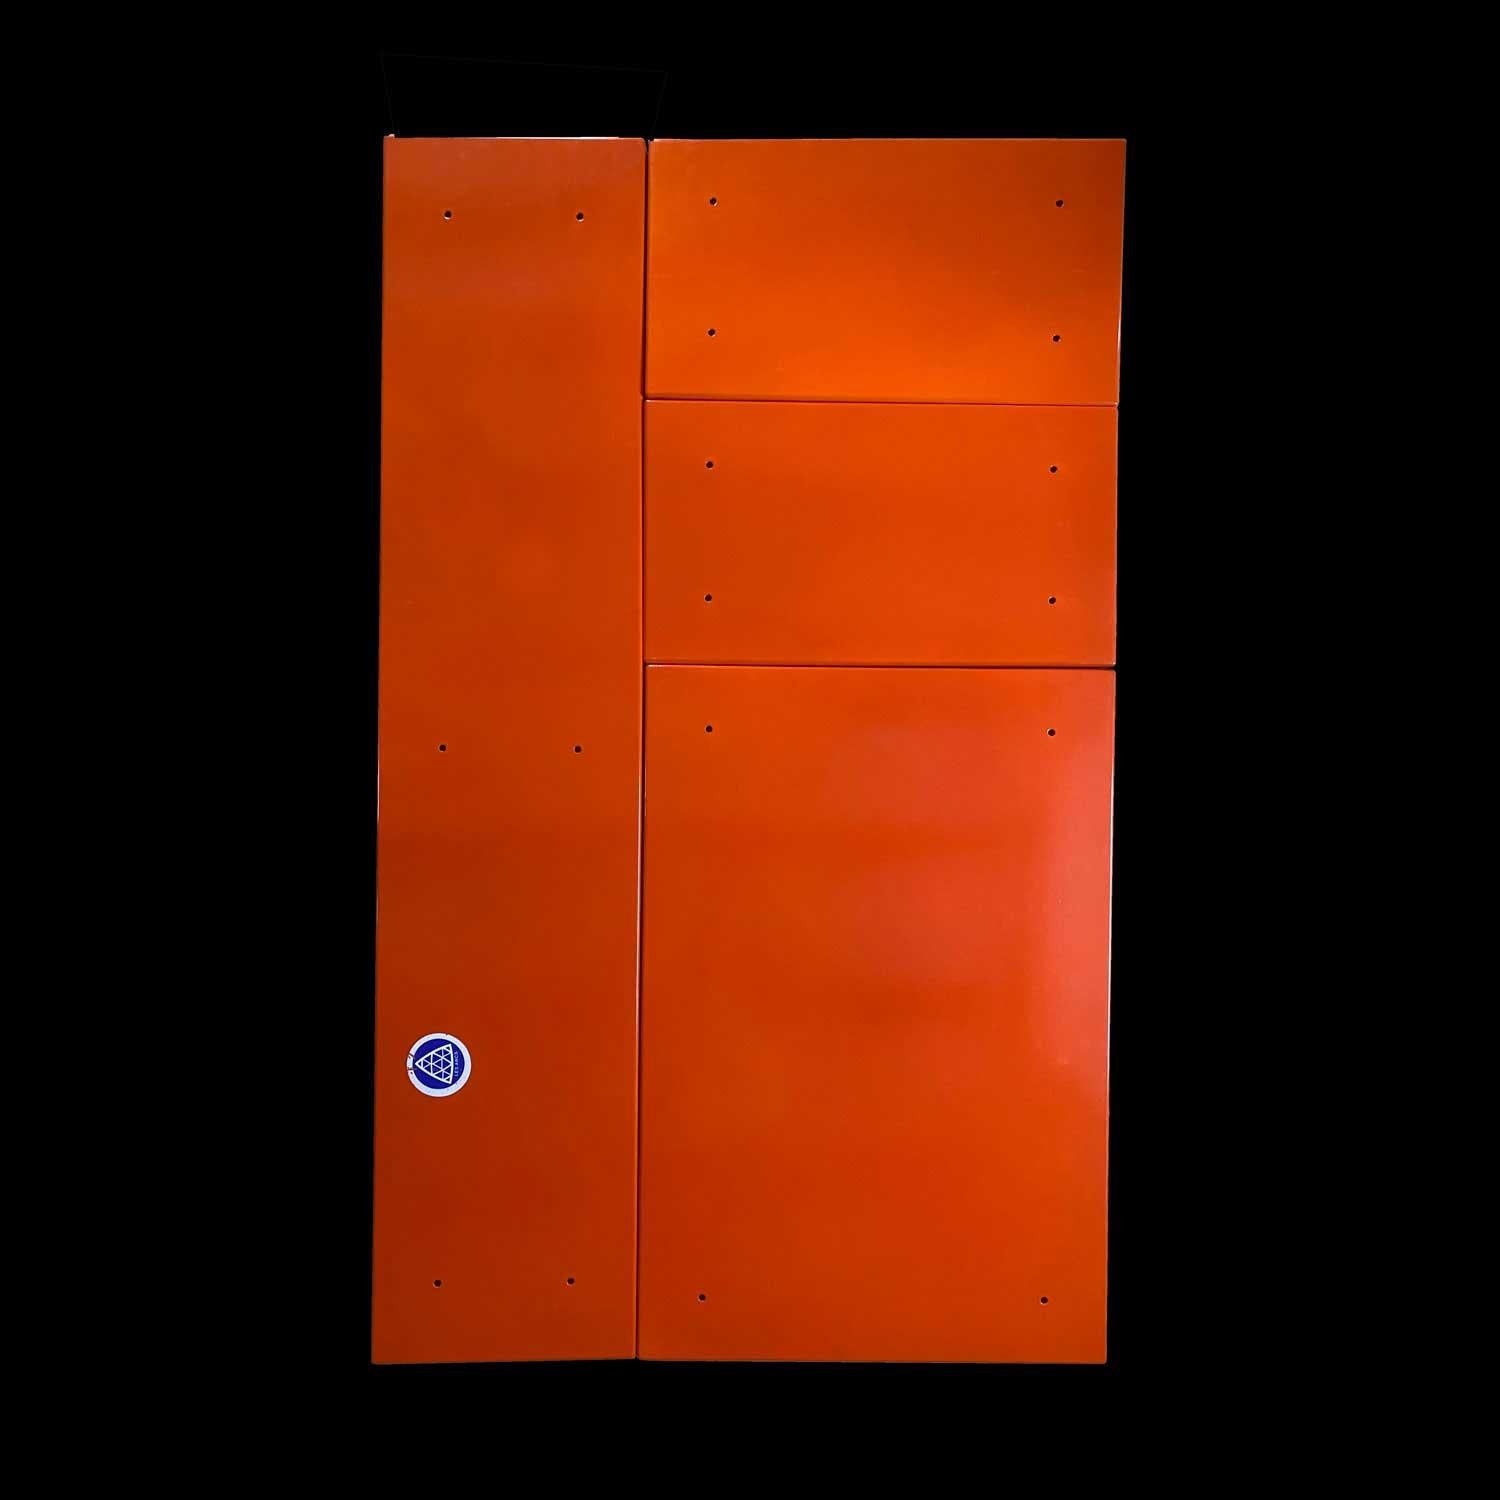 Charlotte Perriand Paneles de chapa naranja Estación de esquí de Arcs 1968 Moderno de mediados de siglo en venta